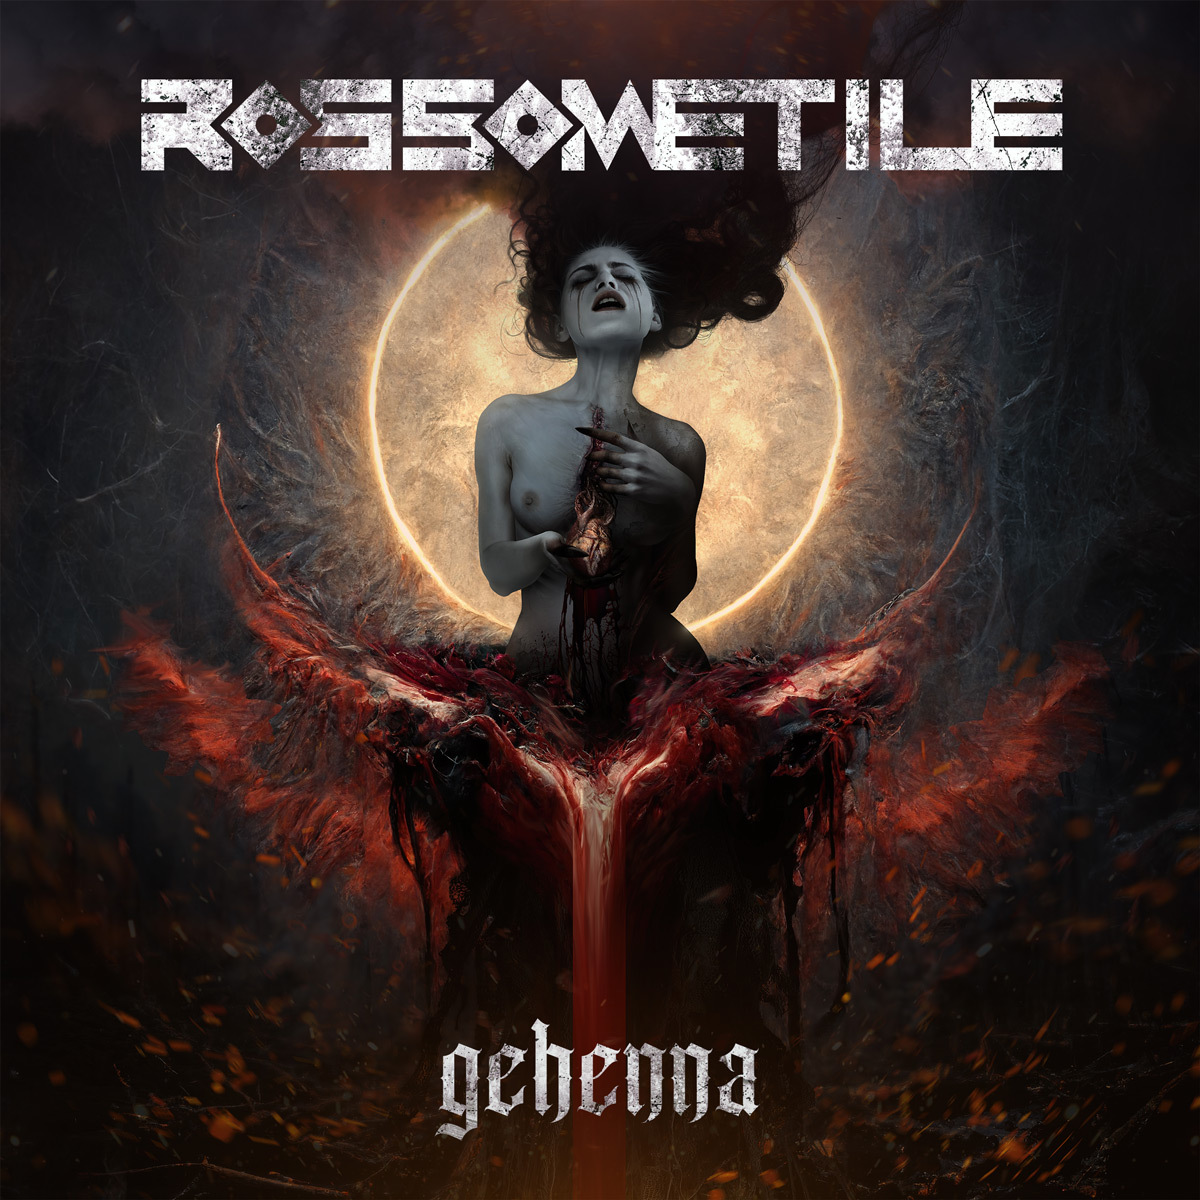 Rossometile: annunciano il nuovo disco “Gehenna” e il video del primo singolo “Sangue e Seduzione”.